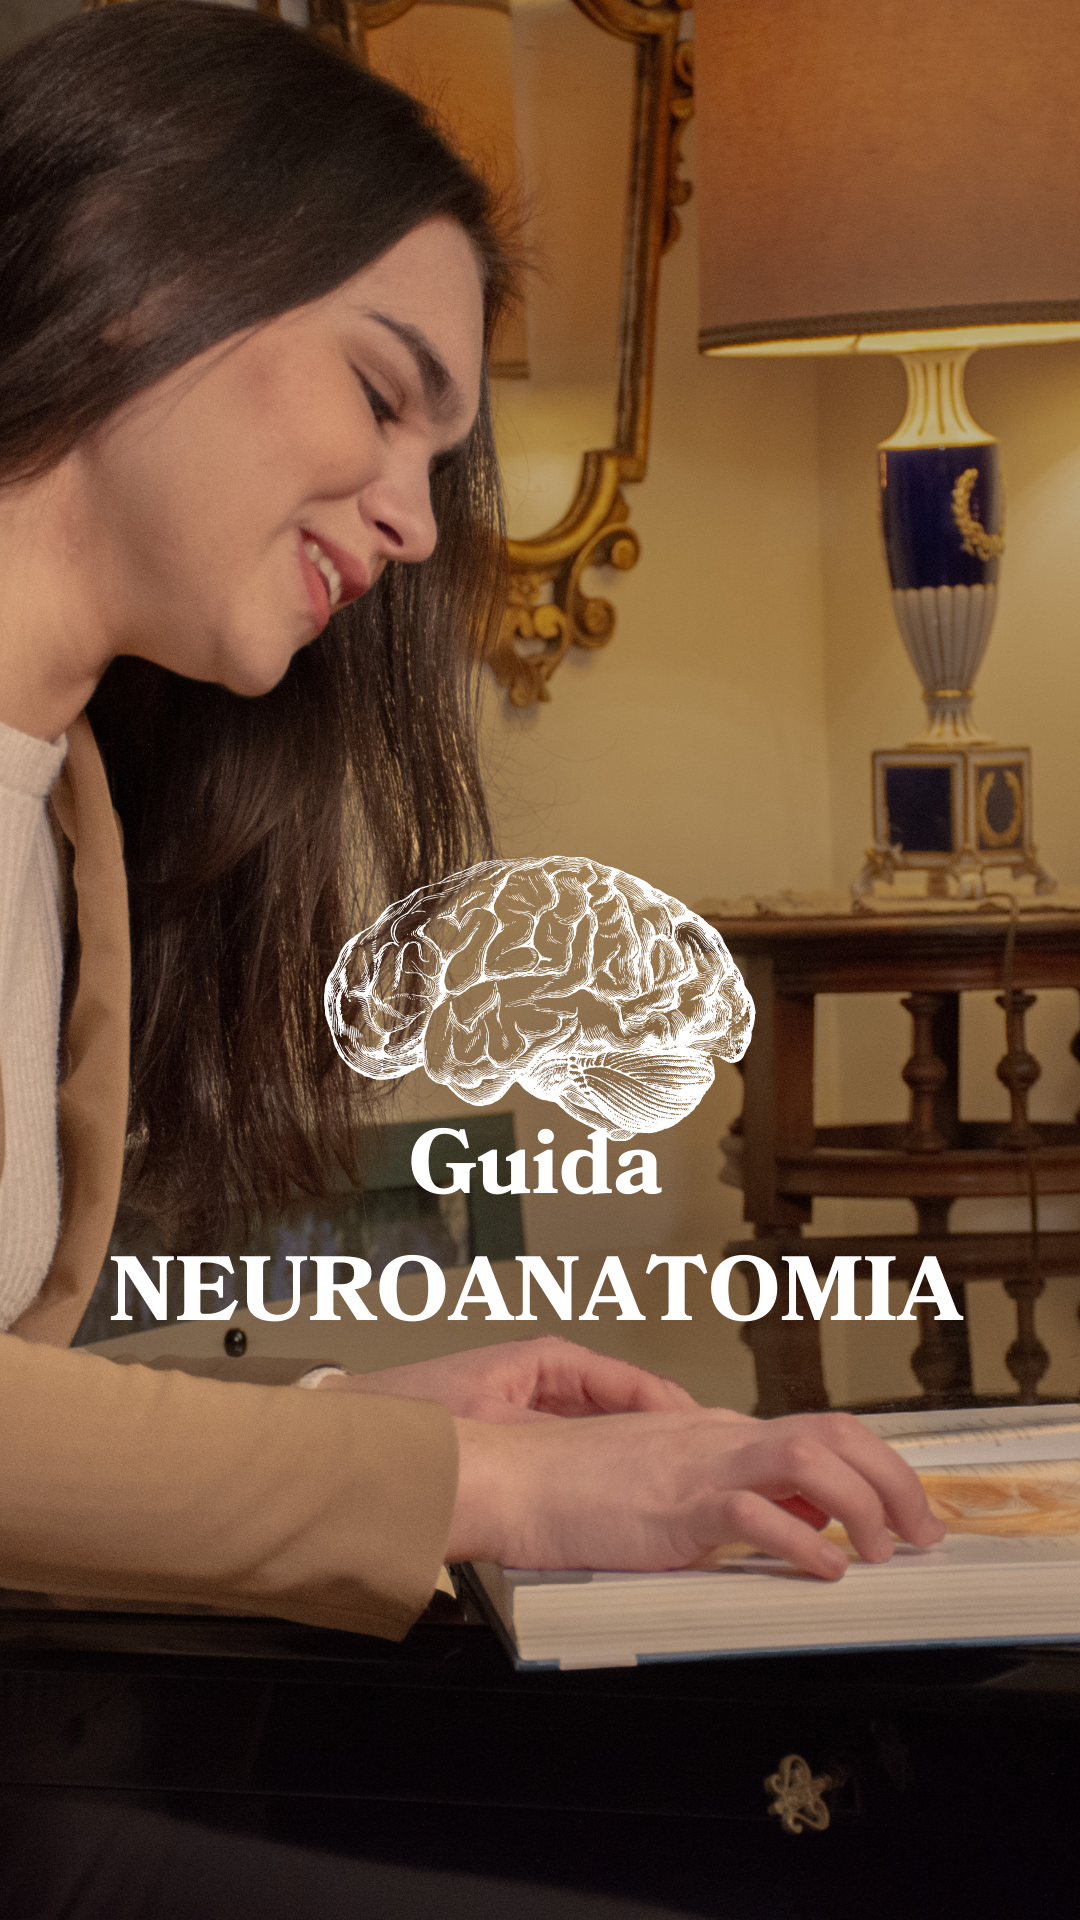 Guida Neuroanatomia: come capirla e non buttare il Netter giù dalla finestra